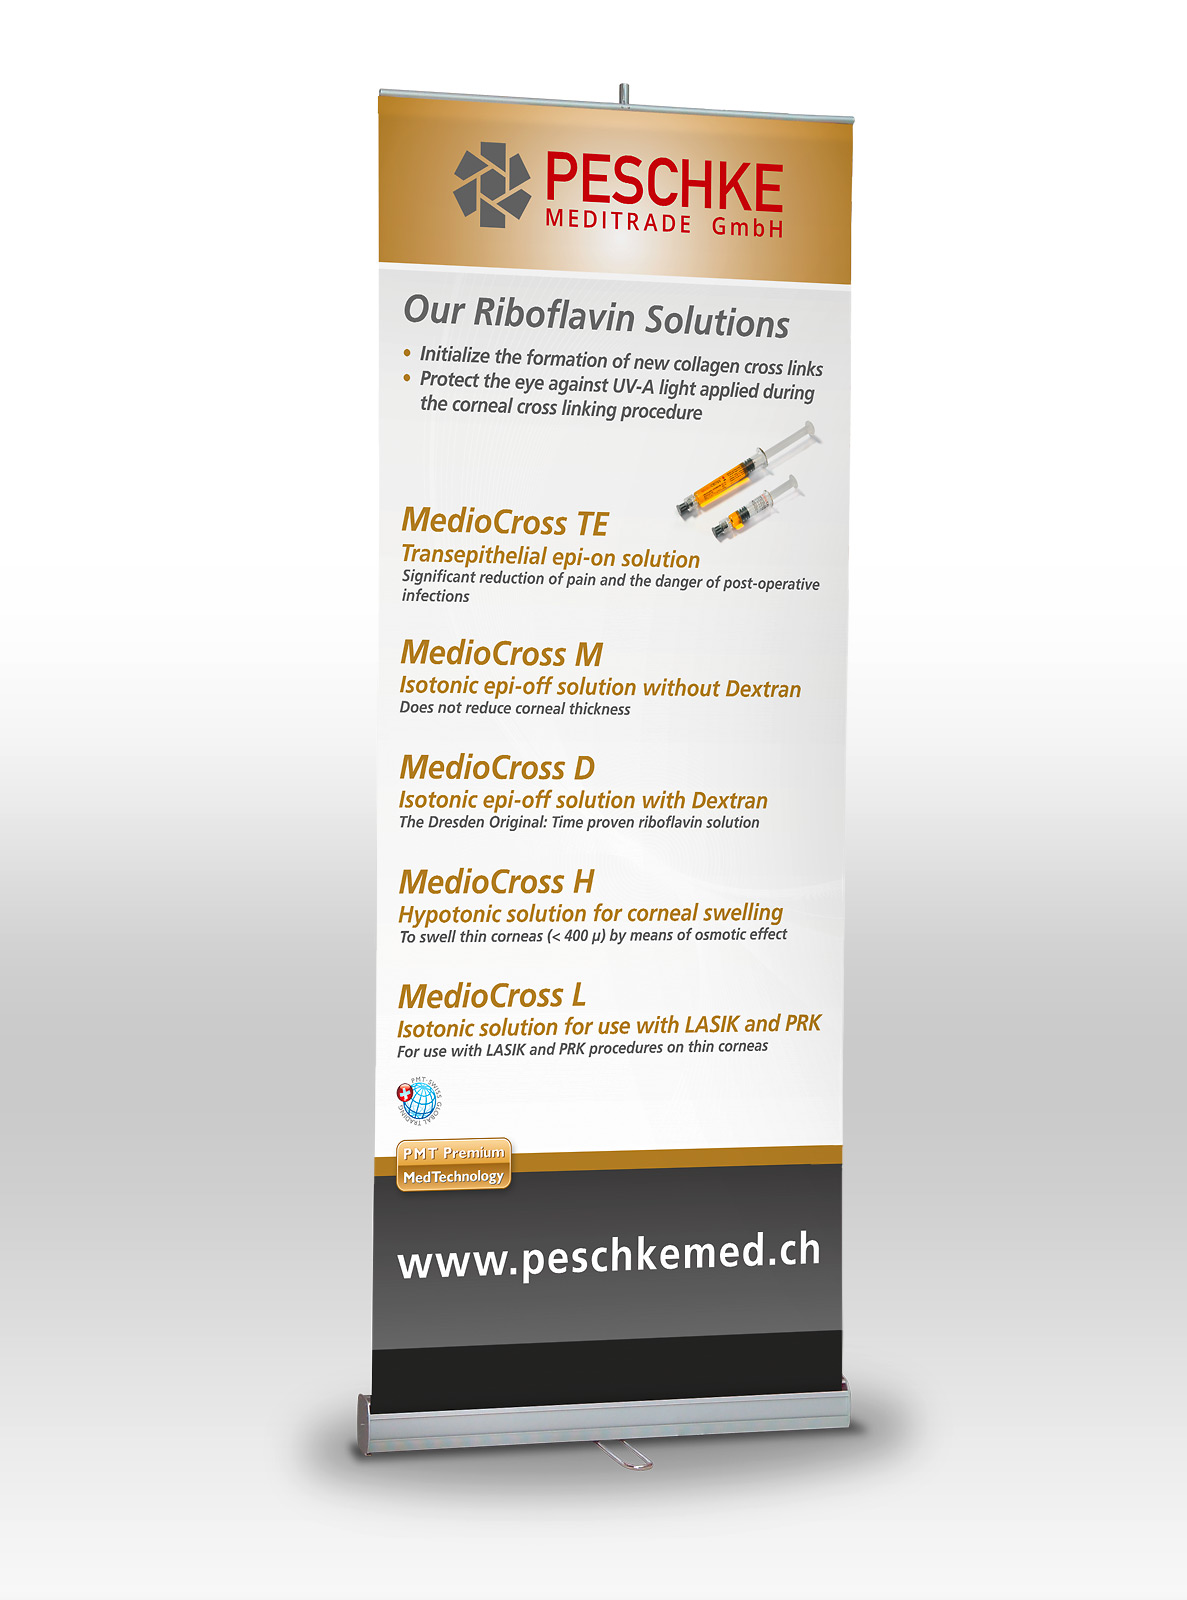 Rollup Display für die Firma Peschke Meditrade GmbH in gold und anthrazit.